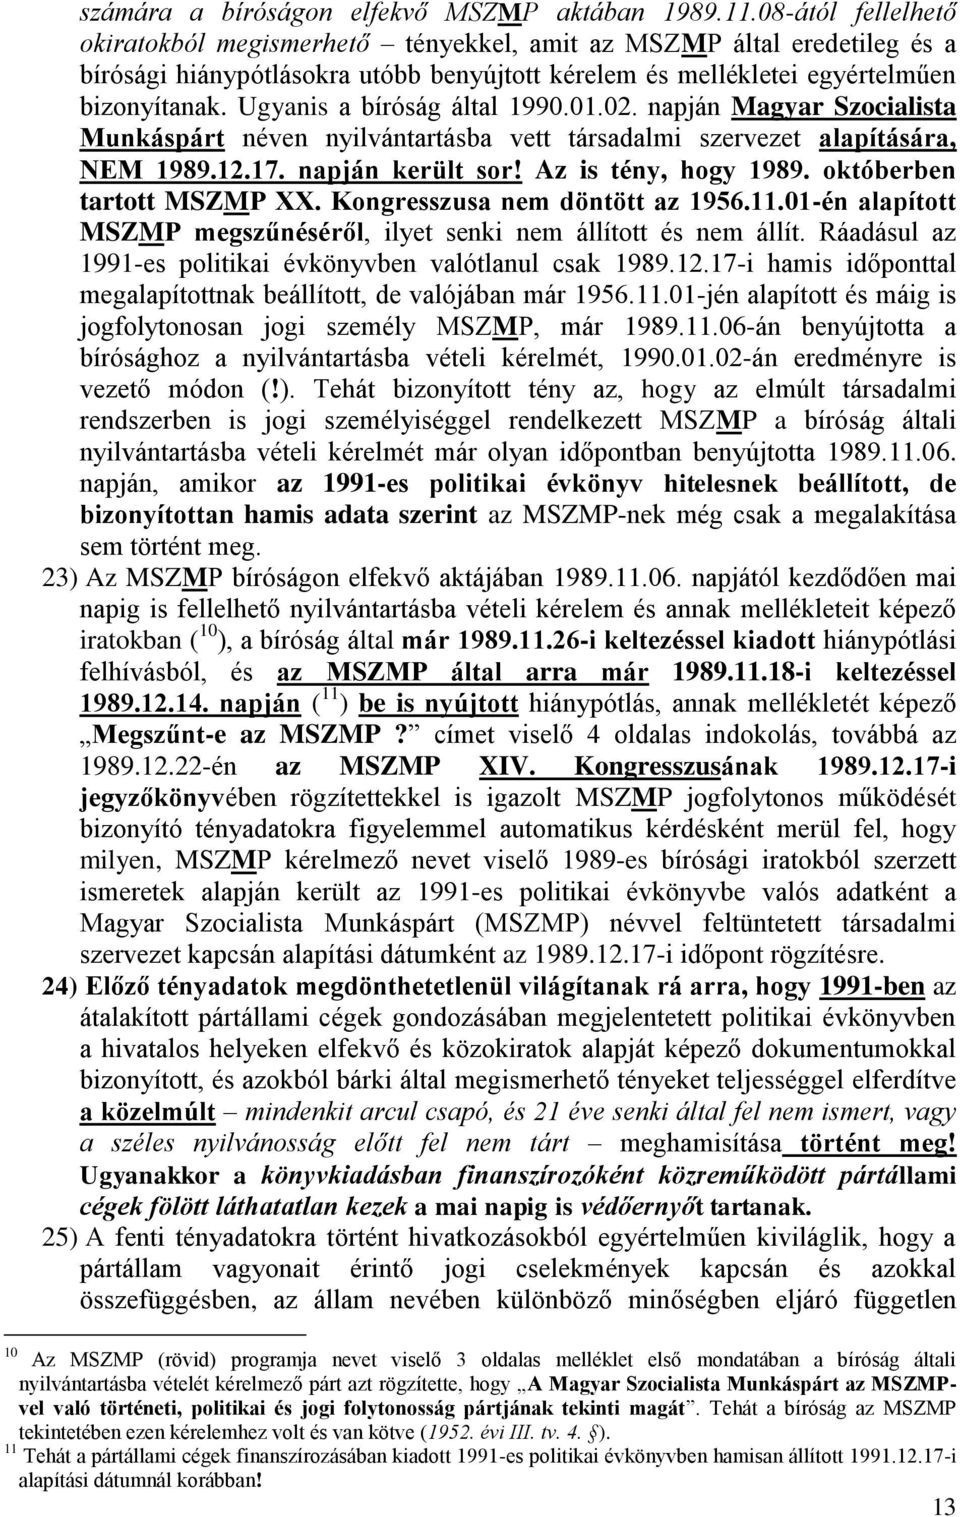 Ugyanis a bíróság által 1990.01.02. napján Magyar Szocialista Munkáspárt néven nyilvántartásba vett társadalmi szervezet alapítására, NEM 1989.12.17. napján került sor! Az is tény, hogy 1989.